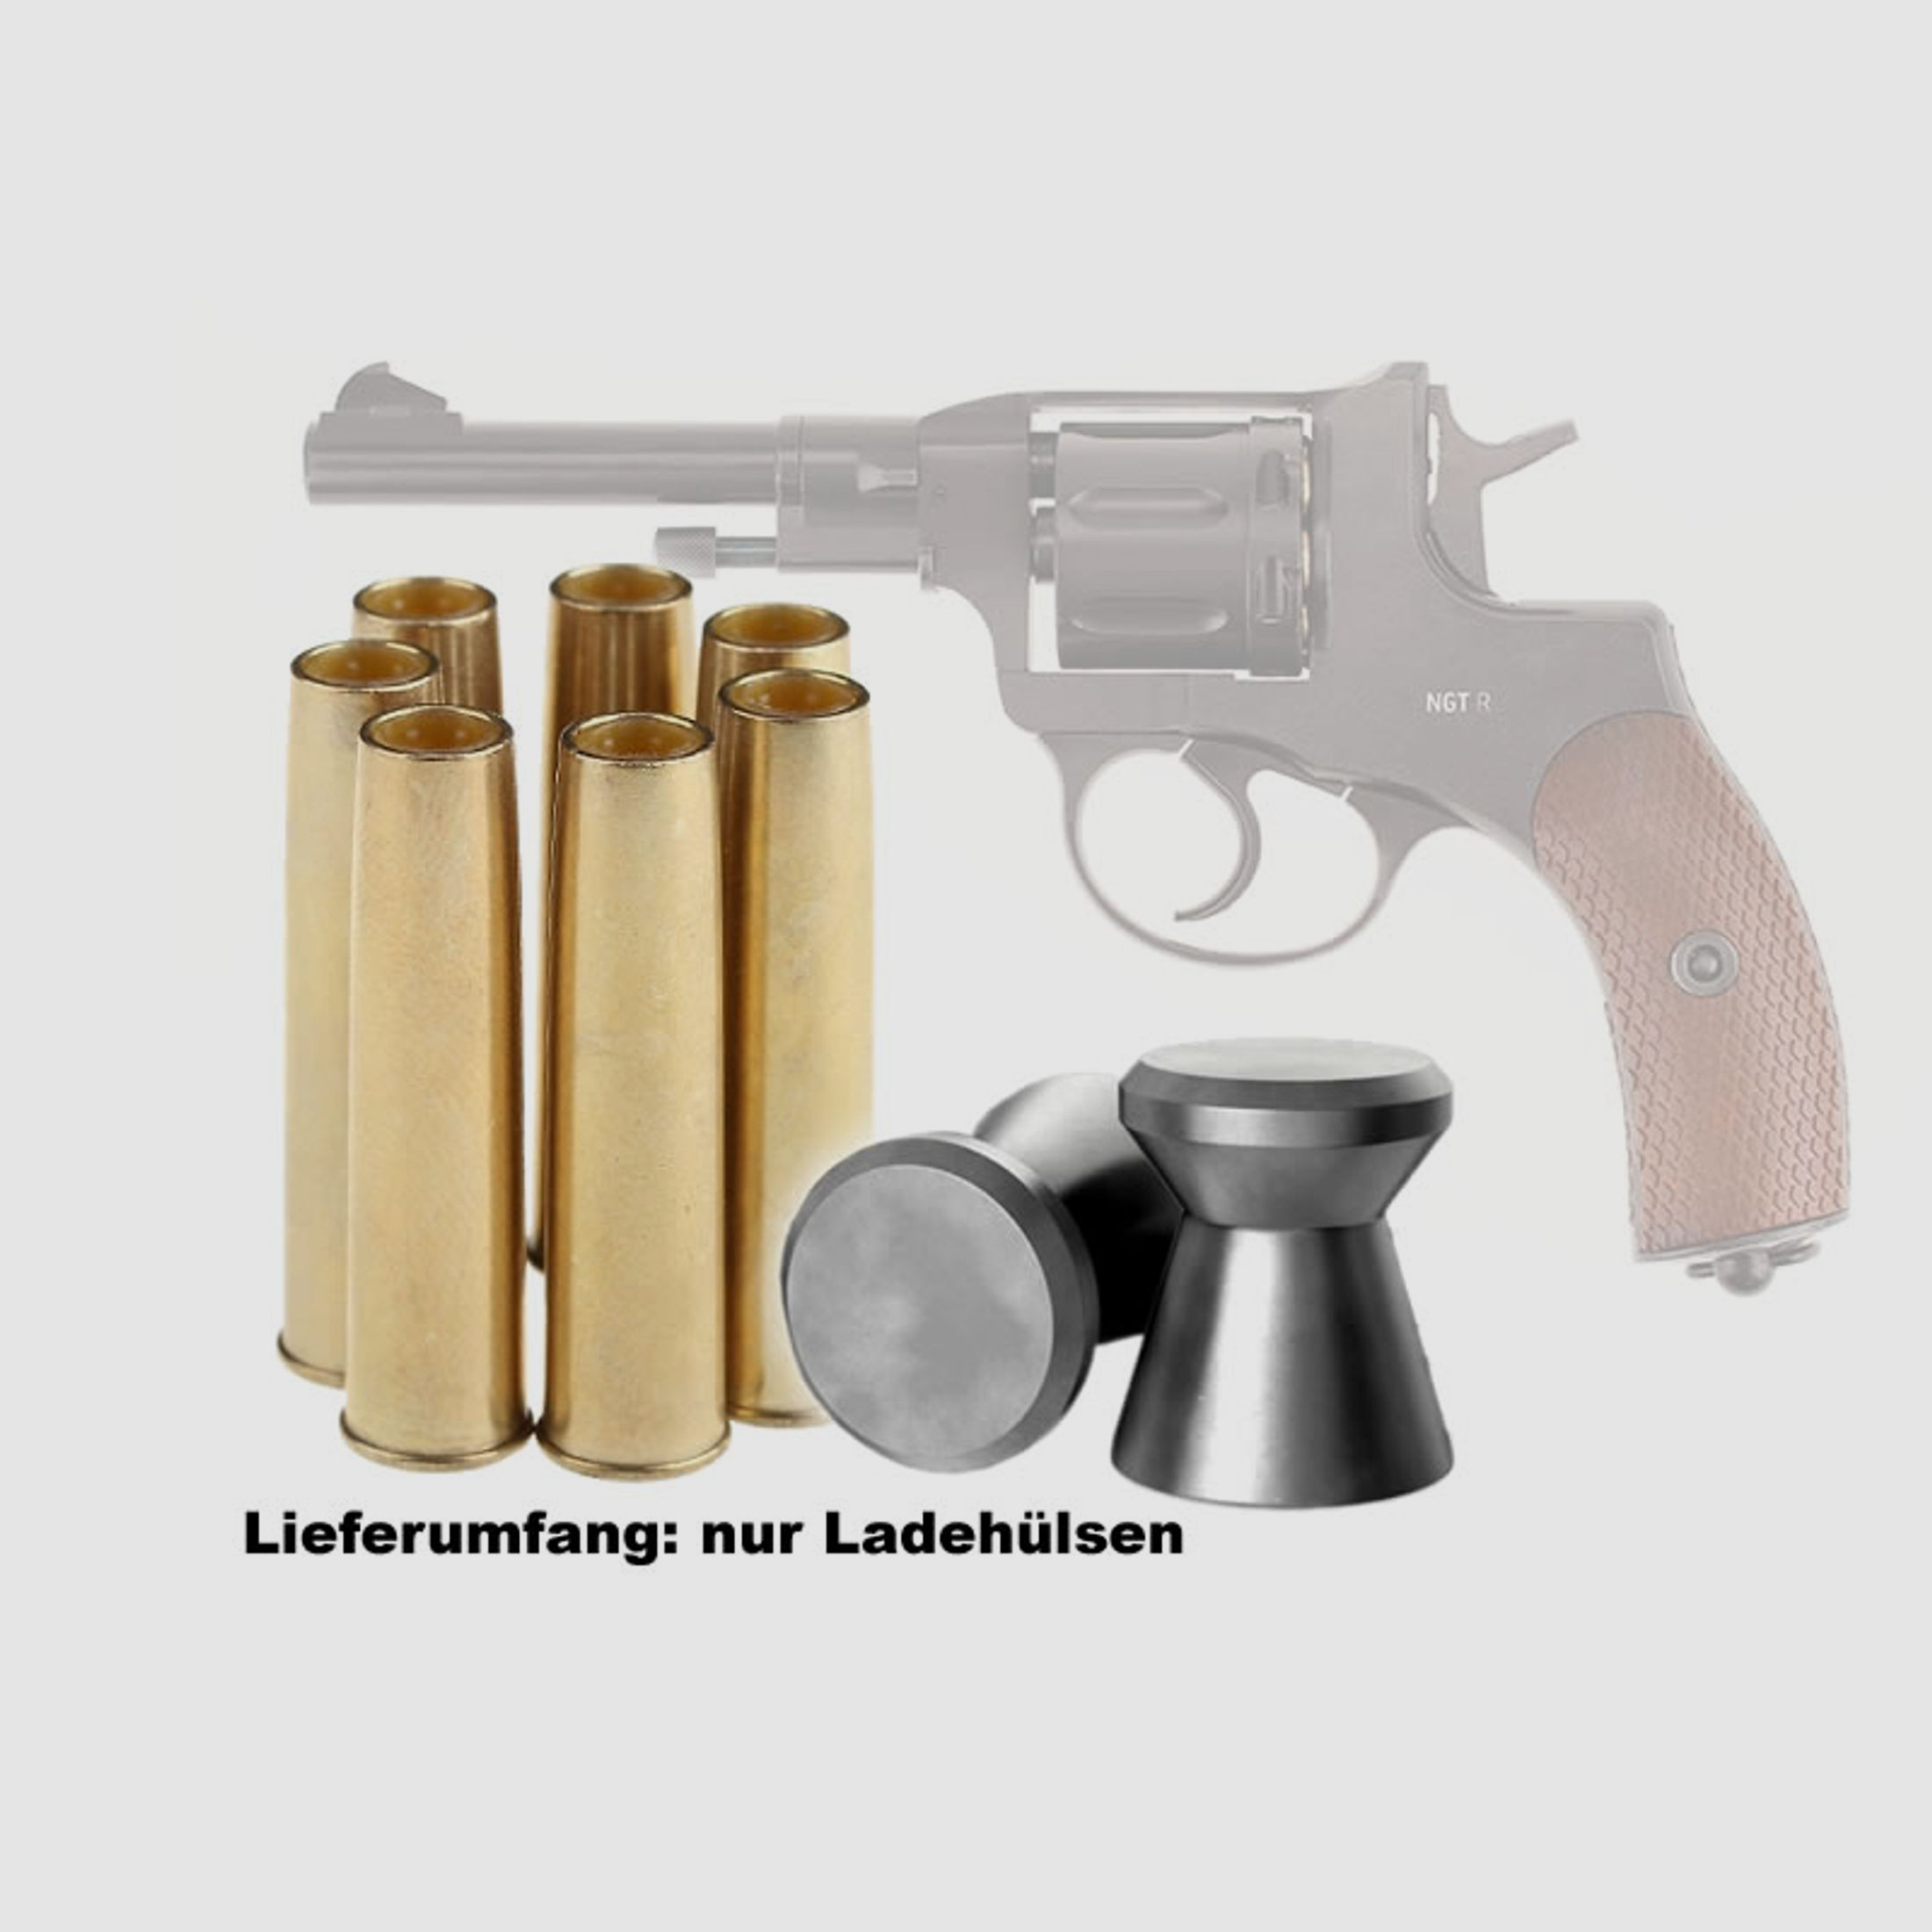 LadehĂĽlsen fĂĽr CO2 Revolver Gletcher Nagant NGT M1895, 7 StĂĽck, Kaliber 4,5 mm Diabolo